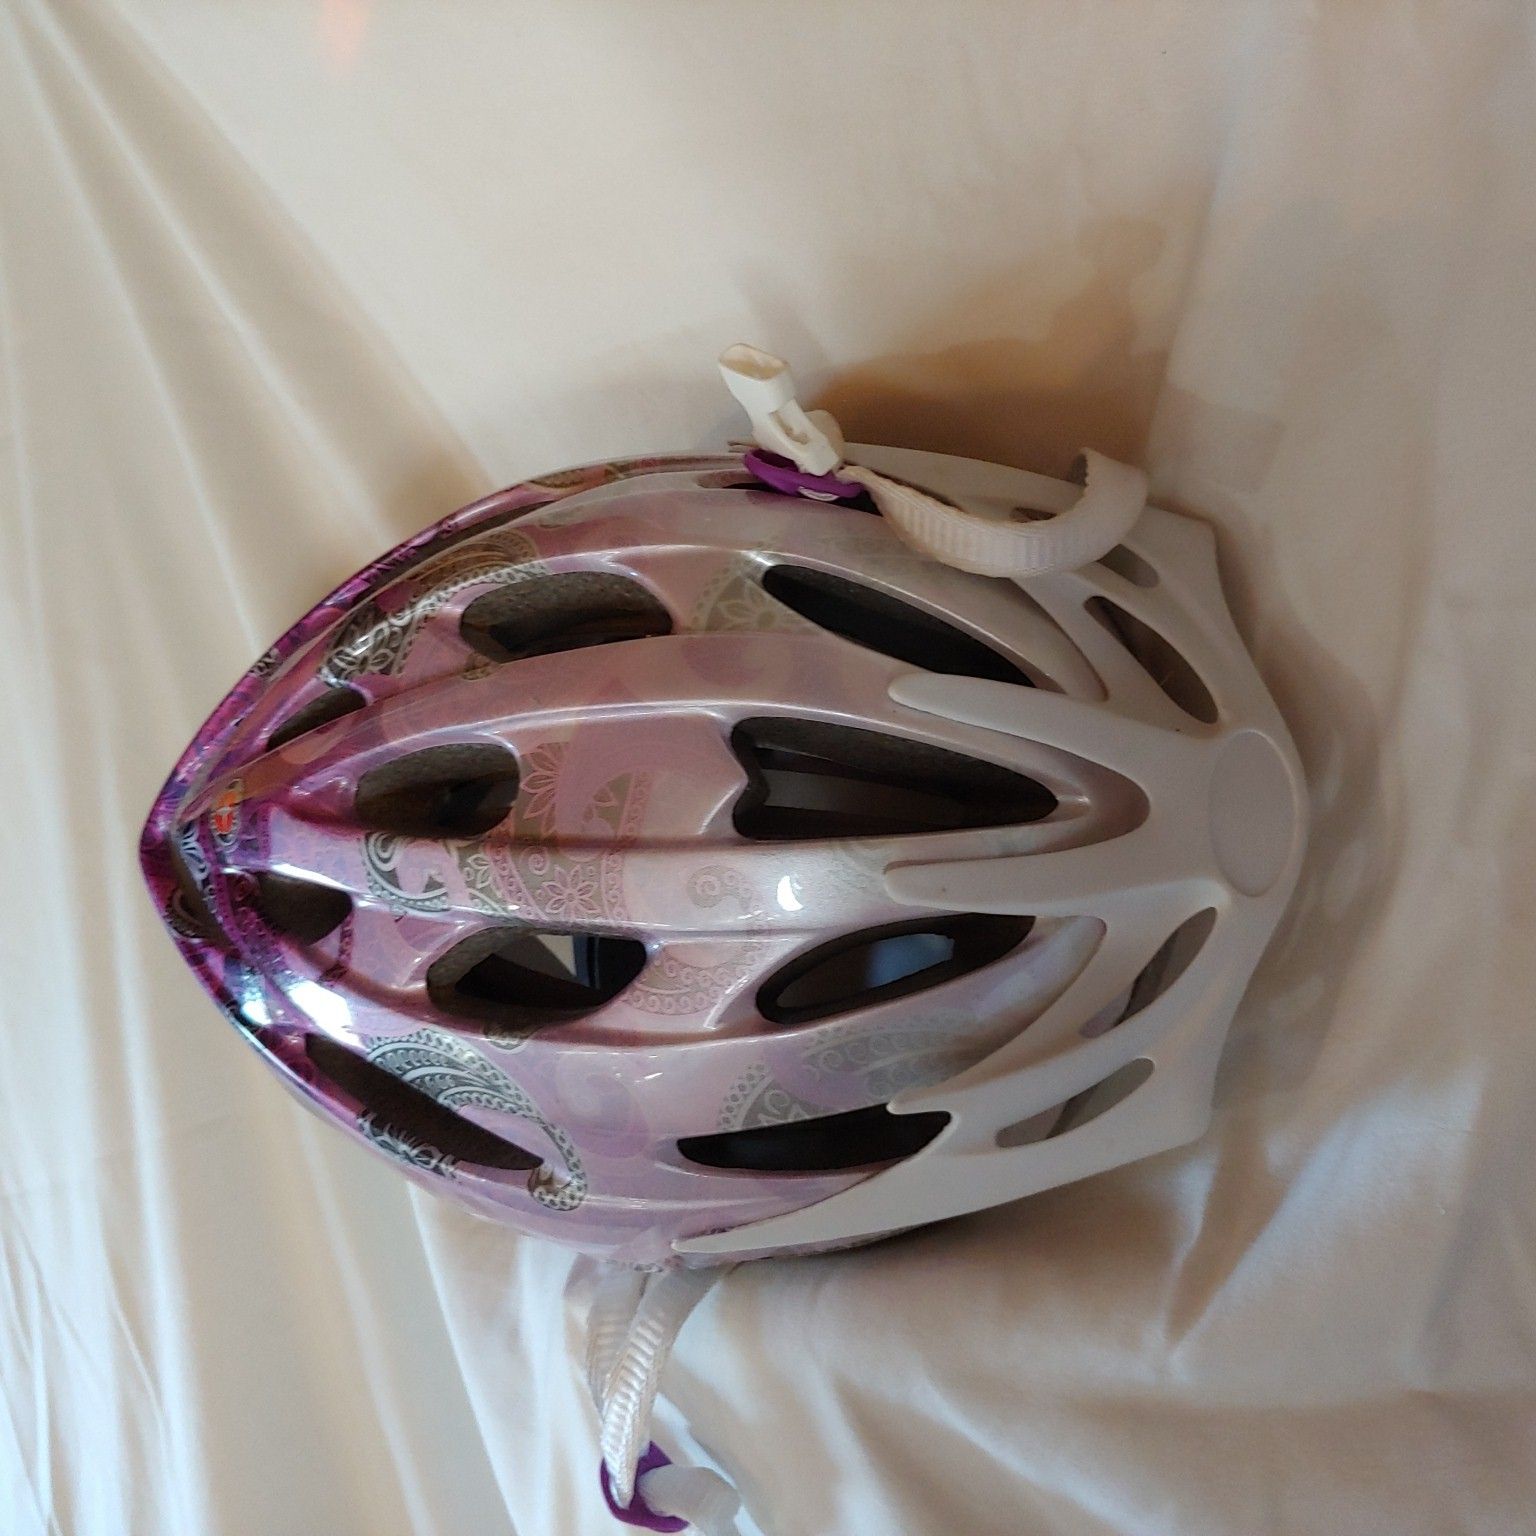 Schwinn adjustable bicycle helmet